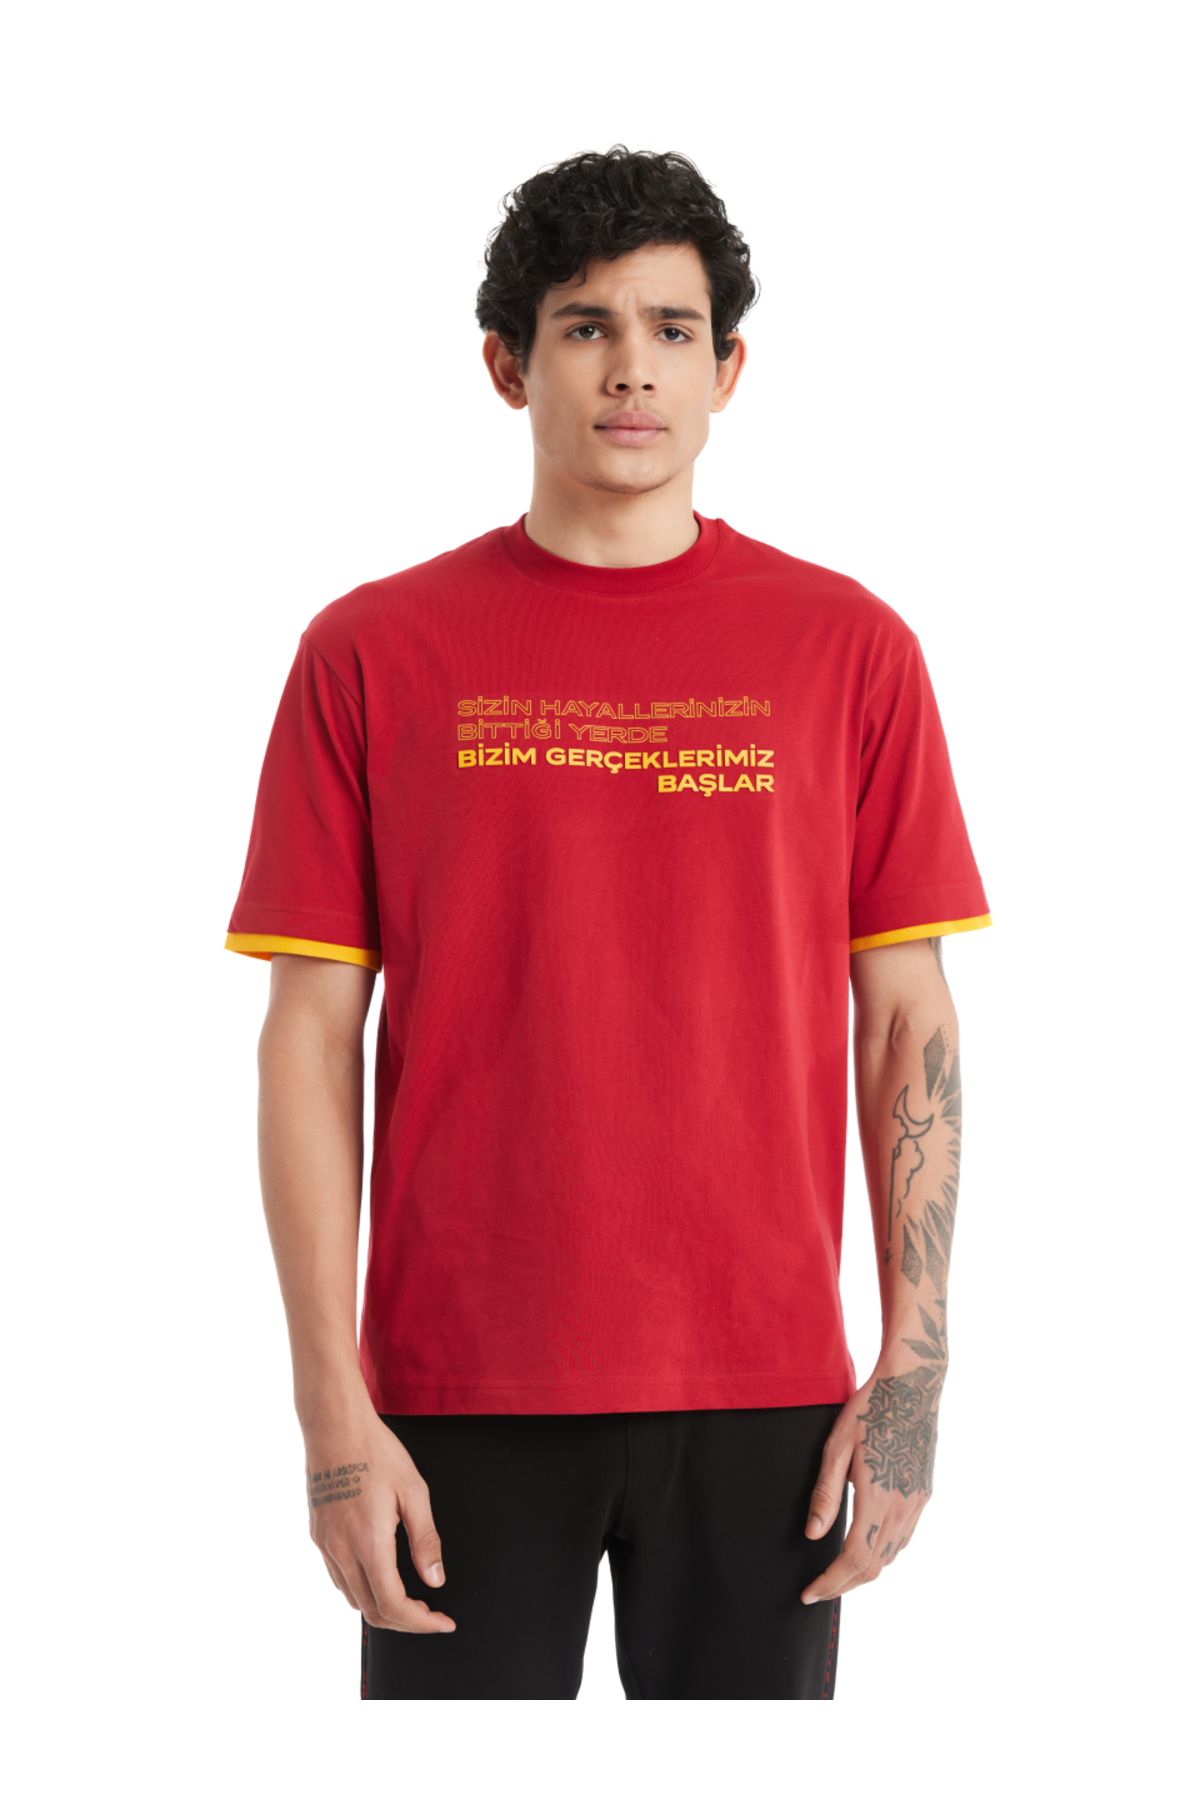 Galatasaray Galatasaray Erkek T-Shirt E232032